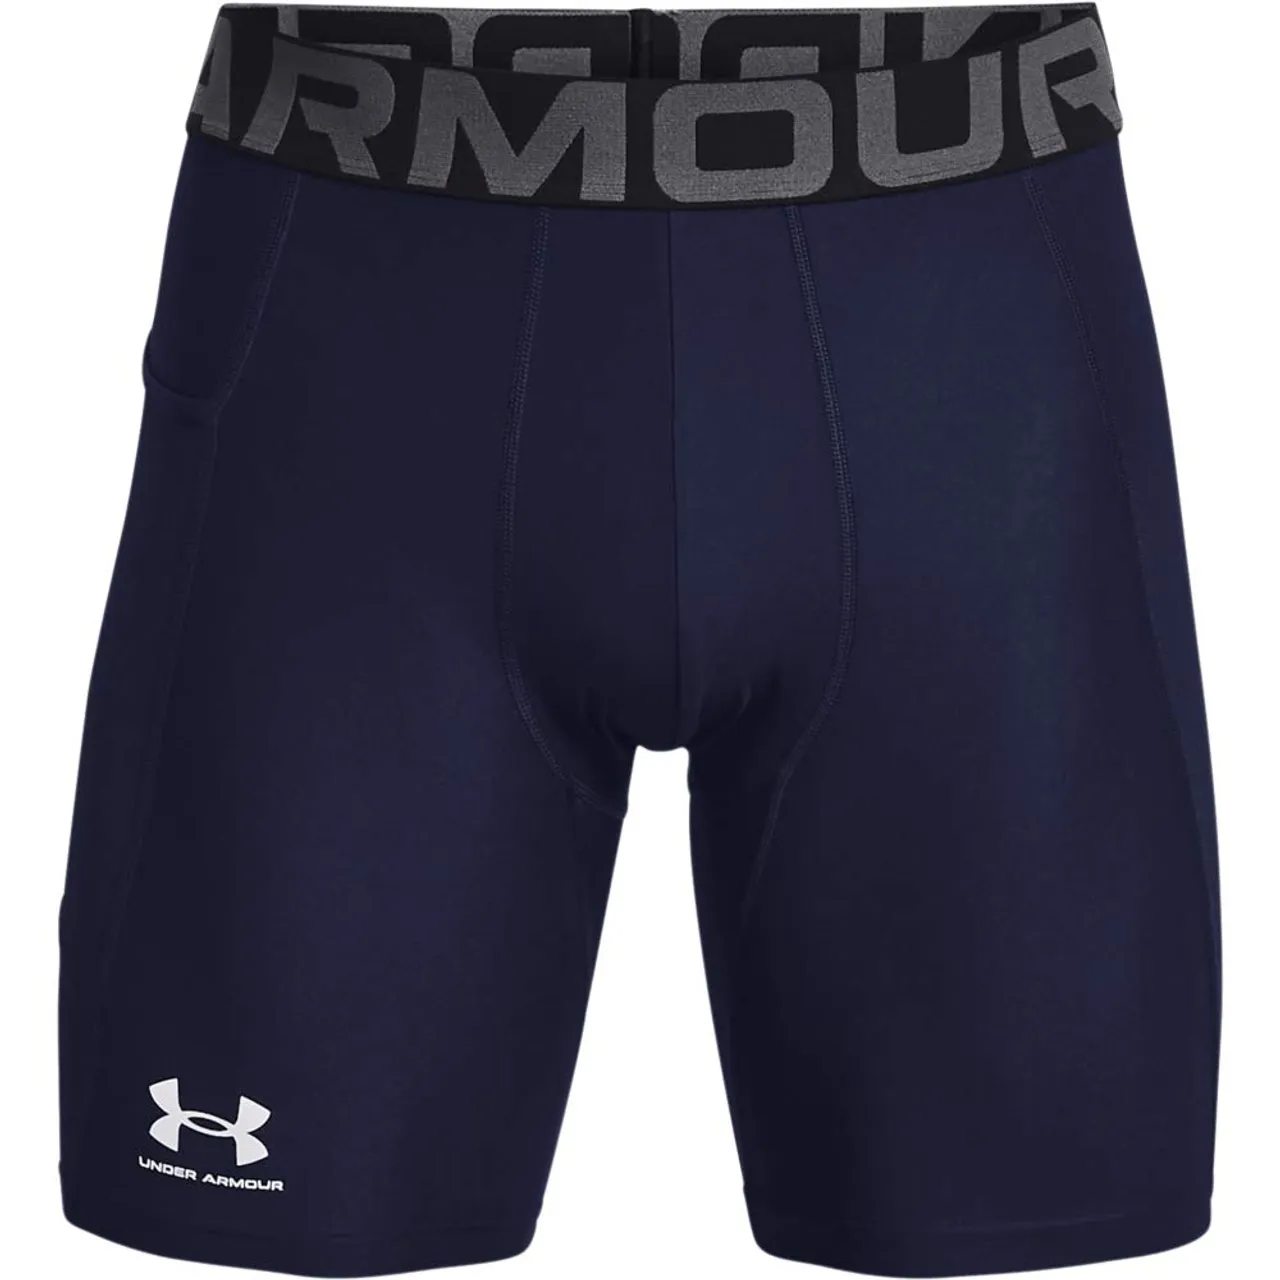 Under Armour Men's UA HG Armour Shorts Pants